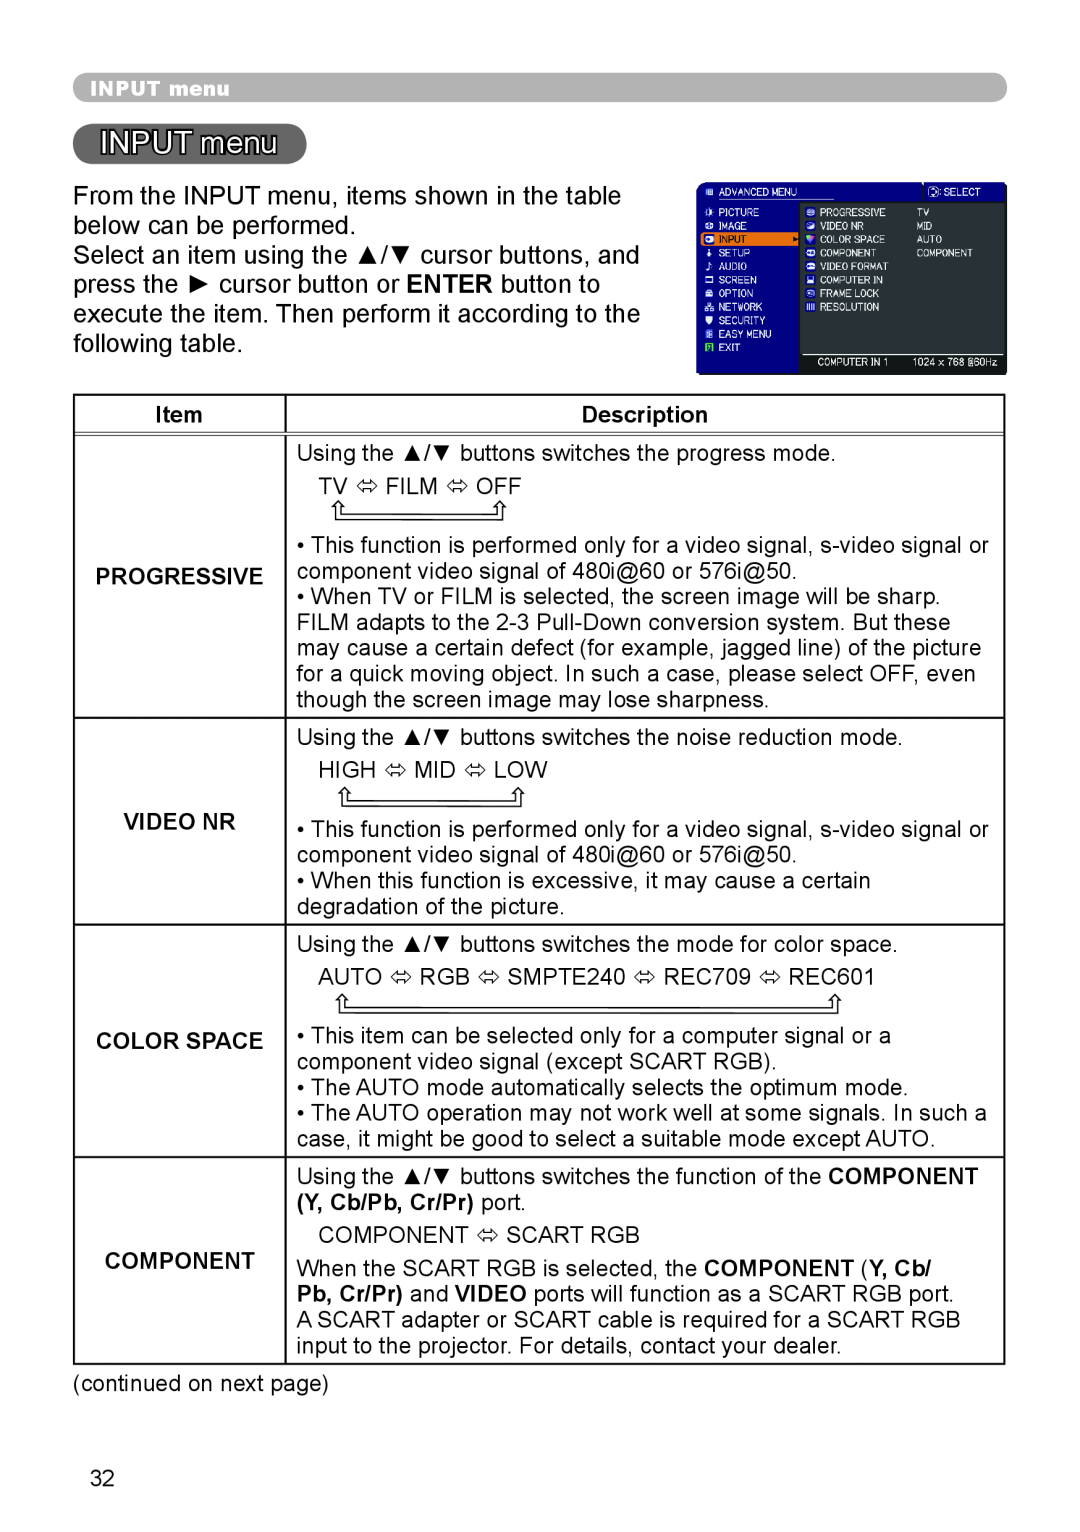 Dukane 8755J-RJ, 8920H-RJ, 8919H-RJ user manual INPUT menu, Description, Progressive, Video Nr, Color Space 